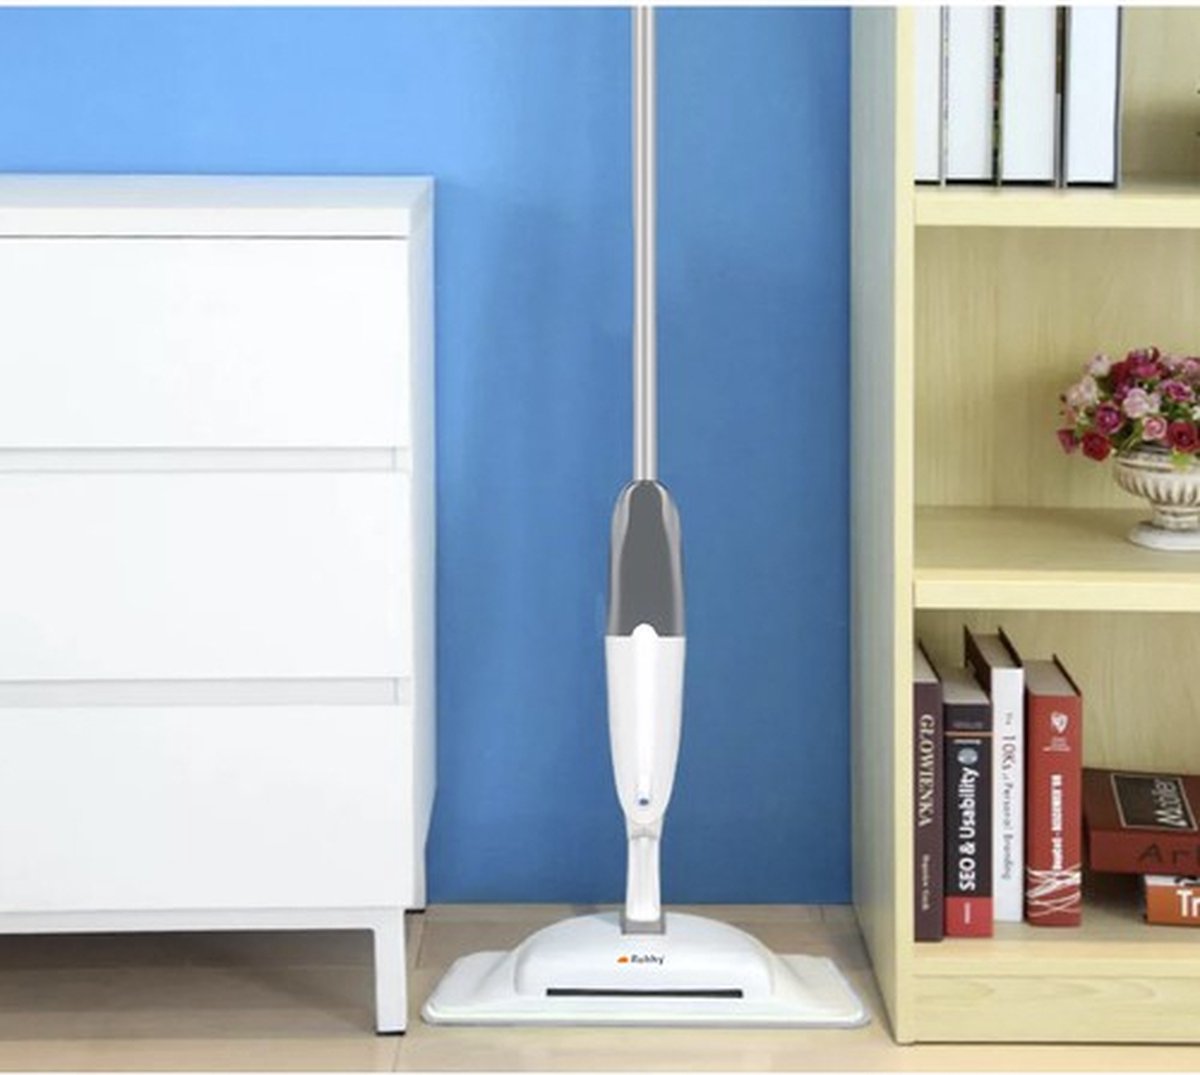 <tc>Ariko</tc>  2-1 Floor wiper and pads - Floor cleaner - Spray mop - Mop stick